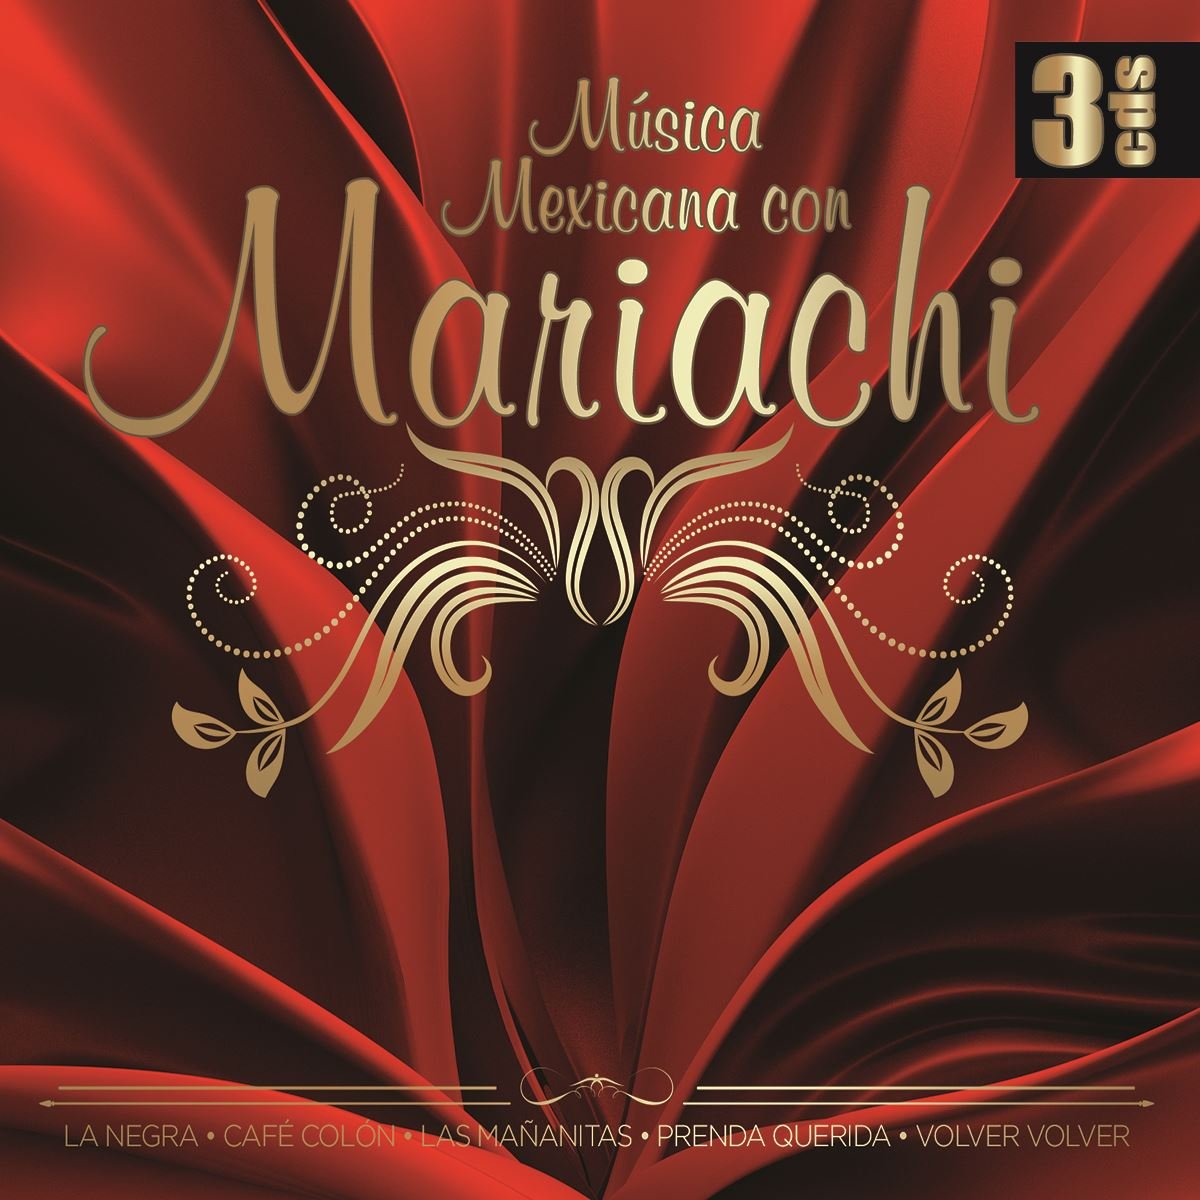 3CD Musica Mexicana con Mariachi